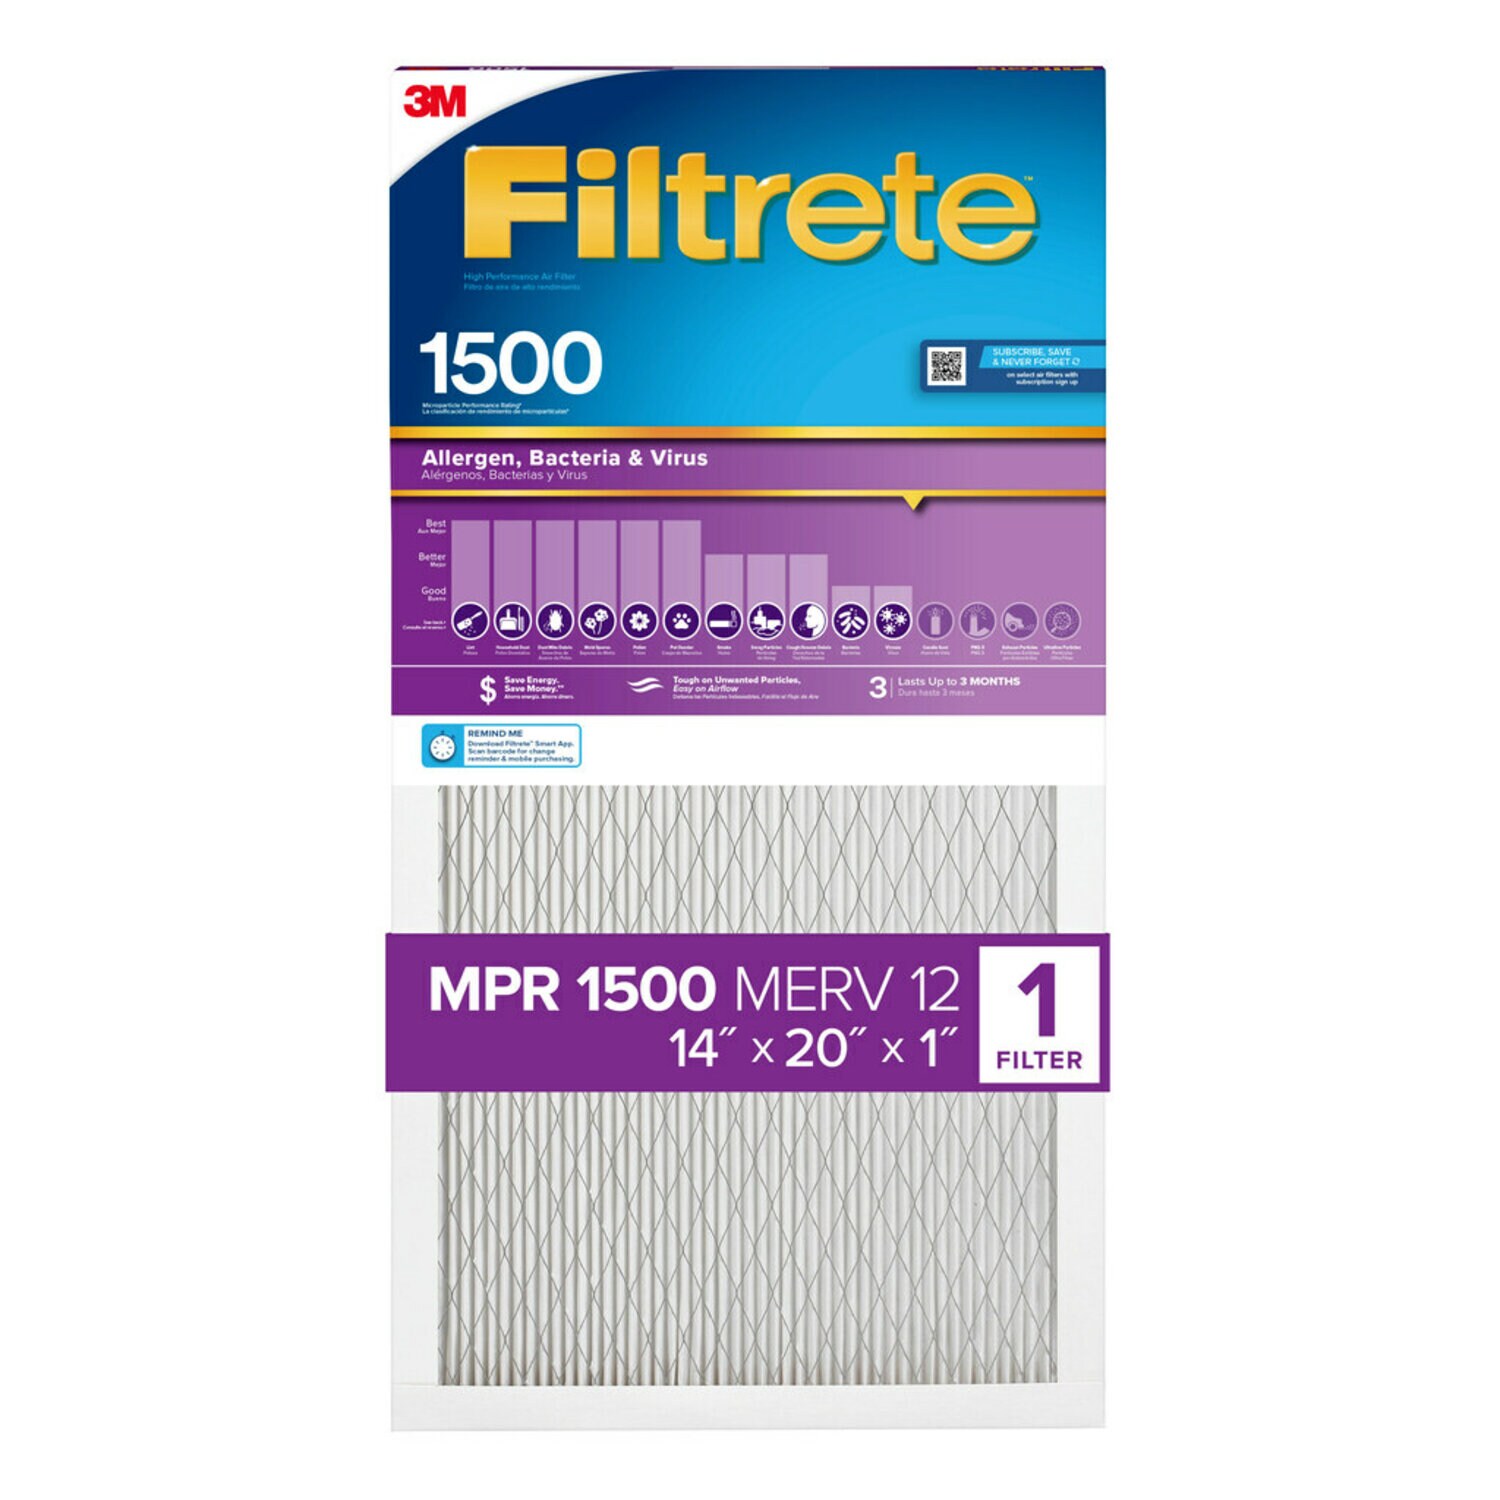 7100264971 - Filtrete High Performance Air Filter 1500 MPR 2005-4, 14 in x 20 in x 1 in (35.5 cm x 50.8 cm x 2.5 cm)